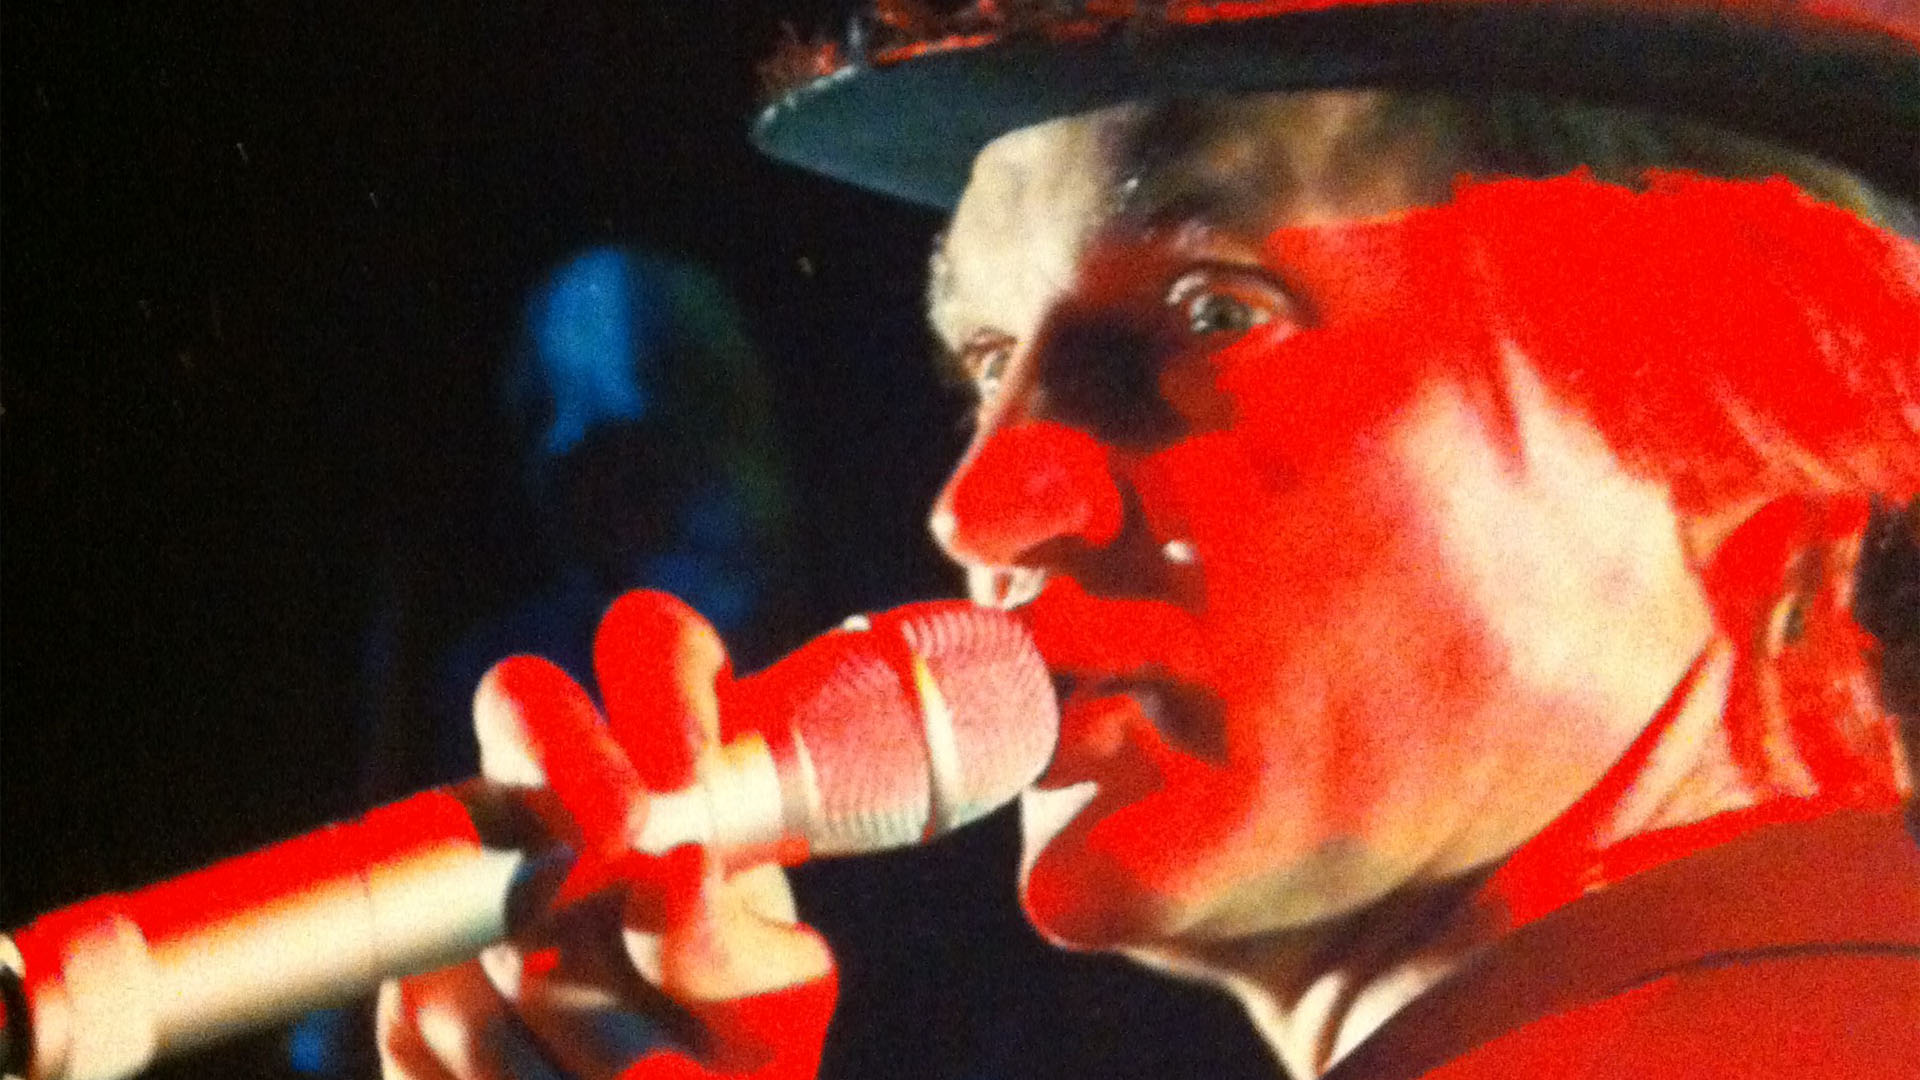 Klickbar bild Törs du öppna din dörr när någon knackar på. Närbild av skådespelaren Lennart Eriksson hållande i en mikrofon i starkt rött ljus.